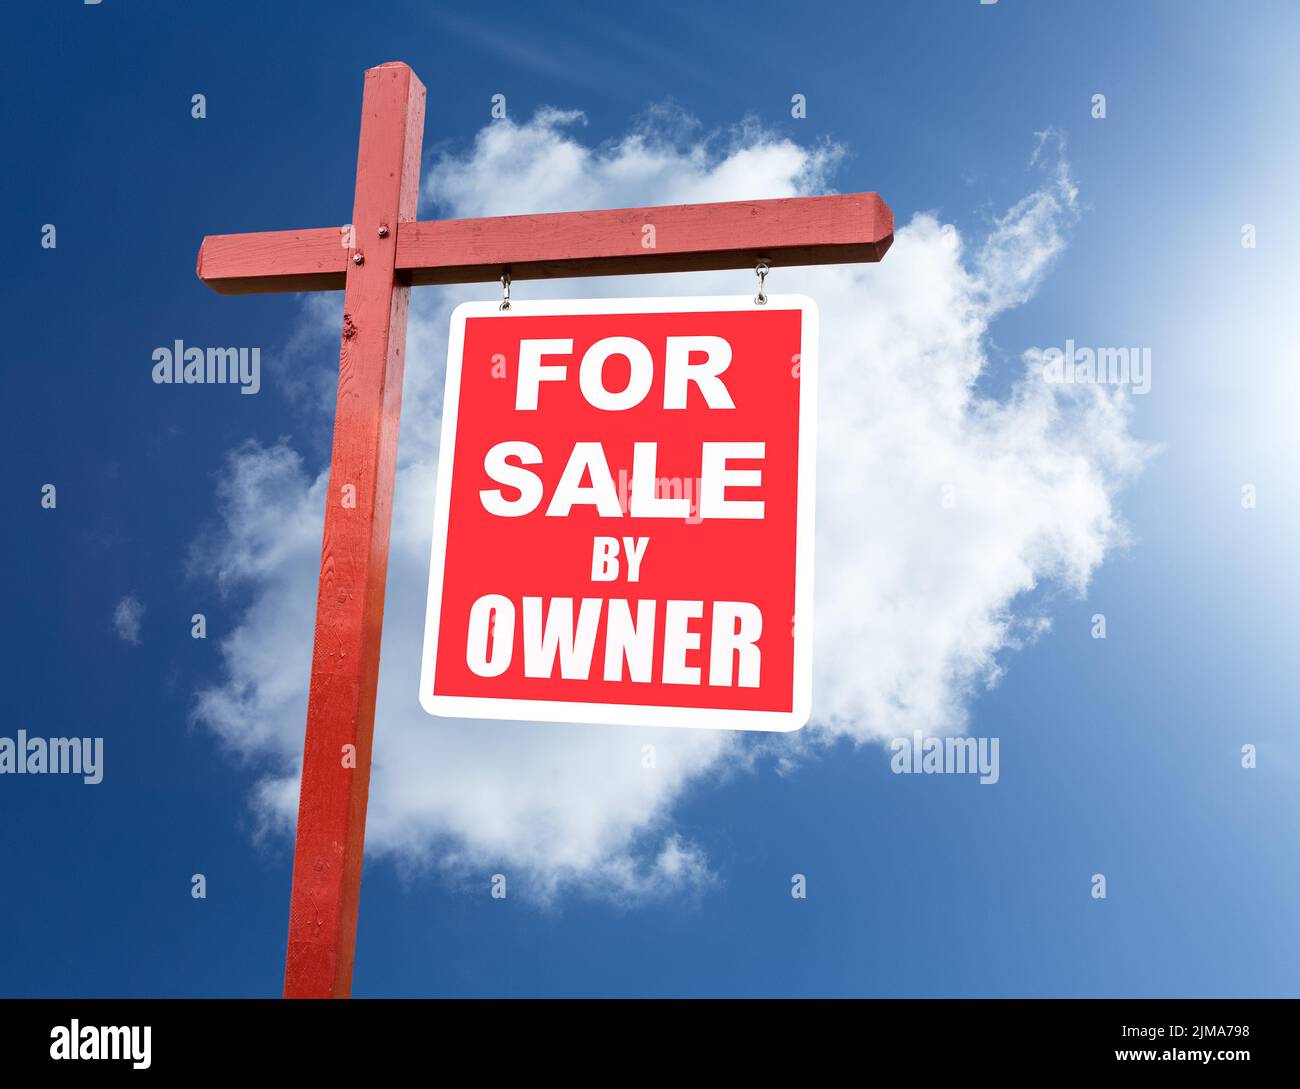 Señal de venta para el hogar en frente de cielo azul Foto de stock